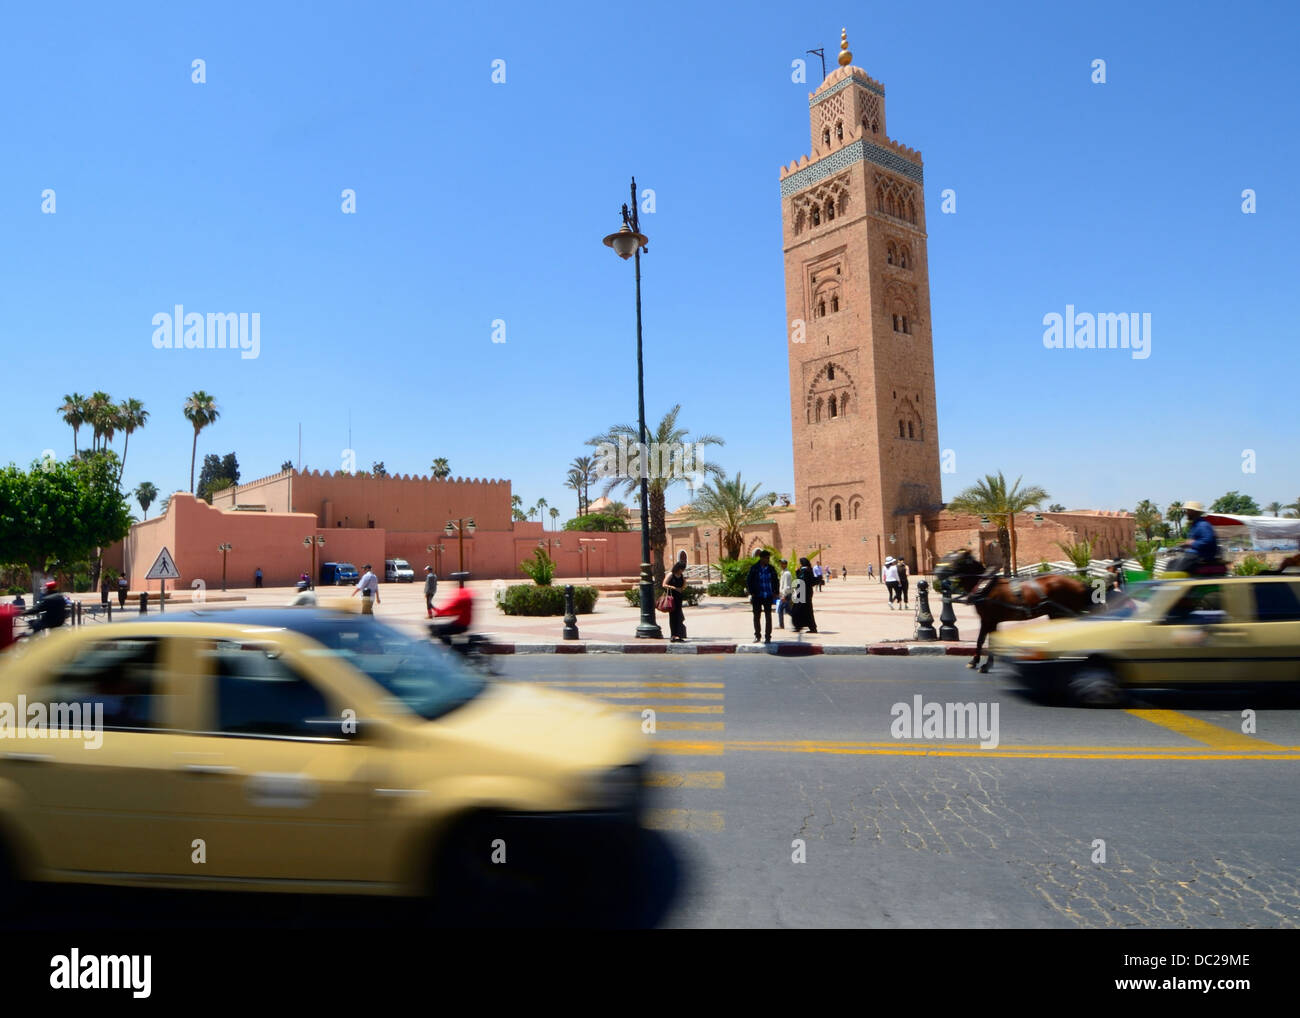 La mezquita Koutoubia o Mezquita Kutubiyya Marrakech Marruecos con un primer plano de la escena de la calle concurrida con taxis, vehículos y personas Foto de stock